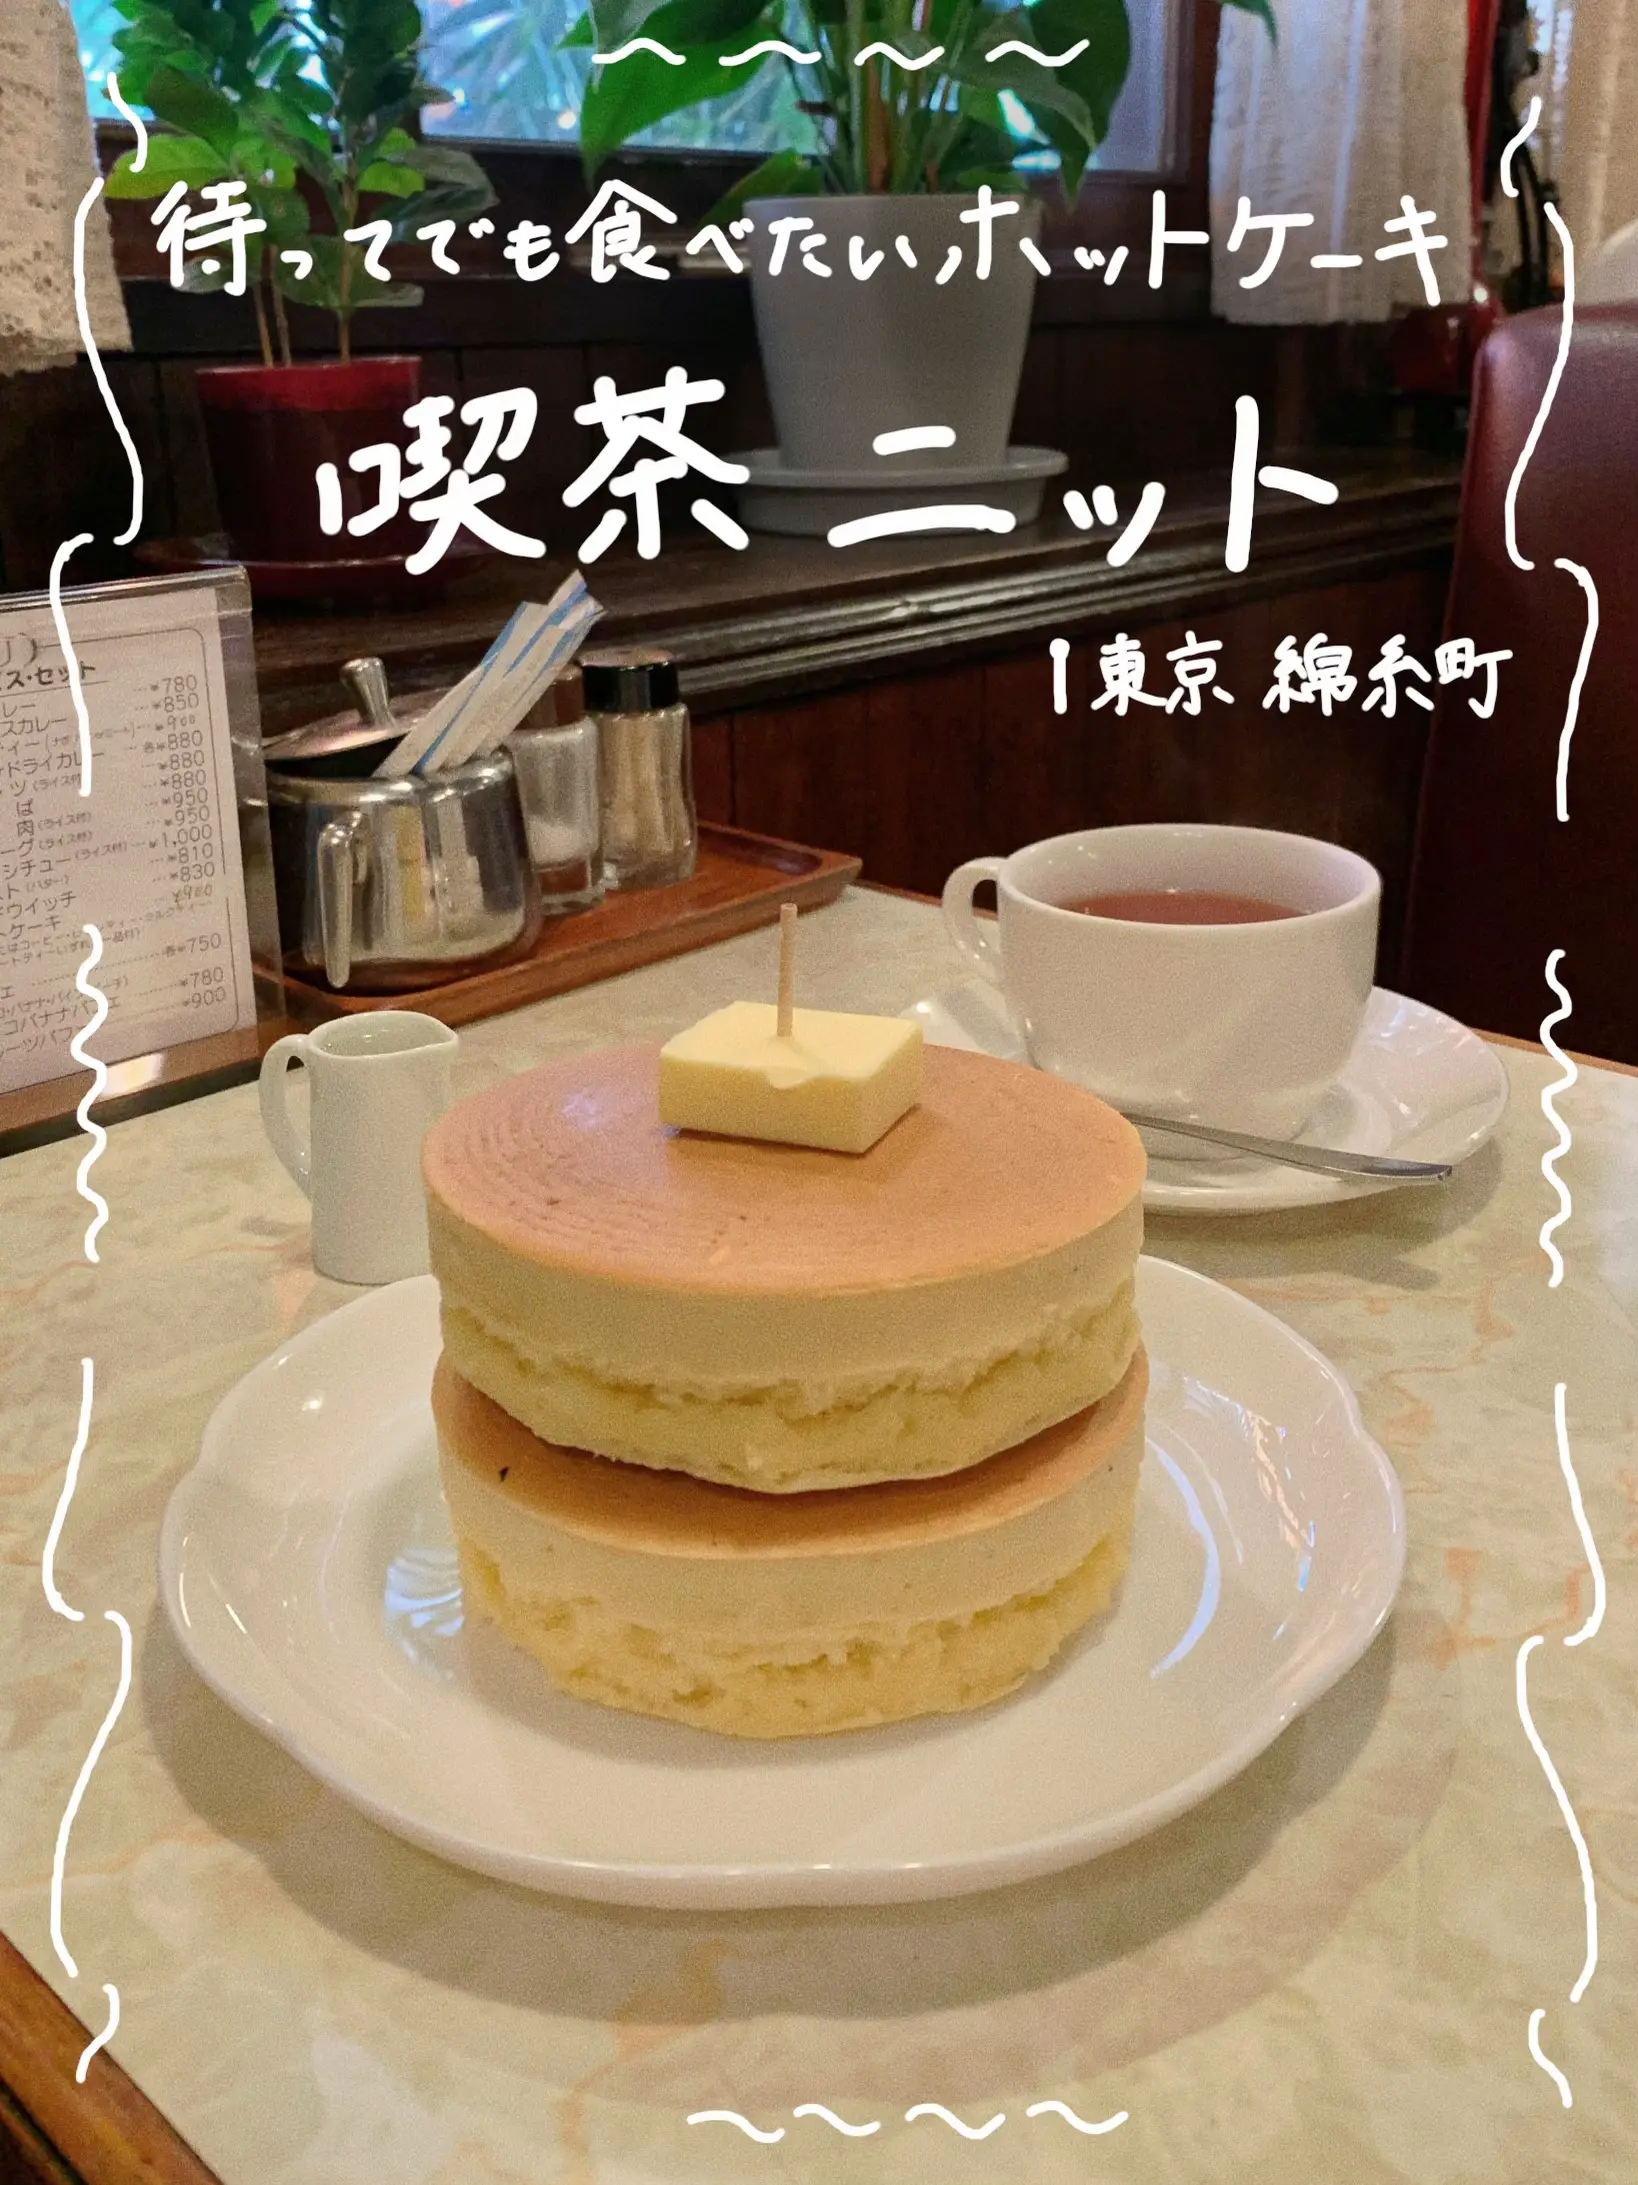 ホットケーキ 喫茶店 - Lemon8検索